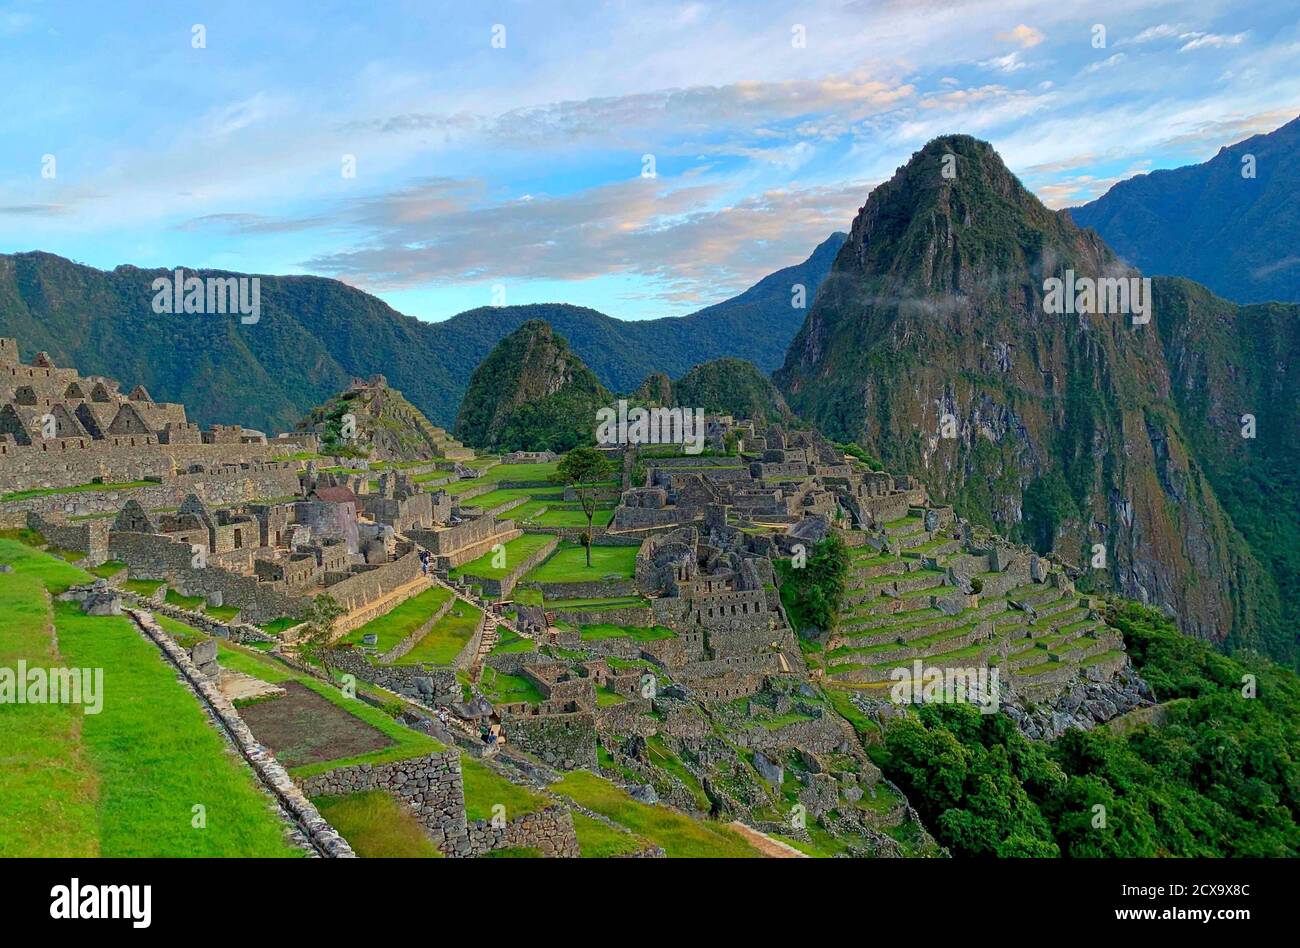 Panorama Machu Picchu, Pérou. Célèbre ancienne ville de l'Empire Inca. Architecture incas époustouflante. Terrasses vertes. Vue sur la montagne Huayna Picchu. Andes. Banque D'Images